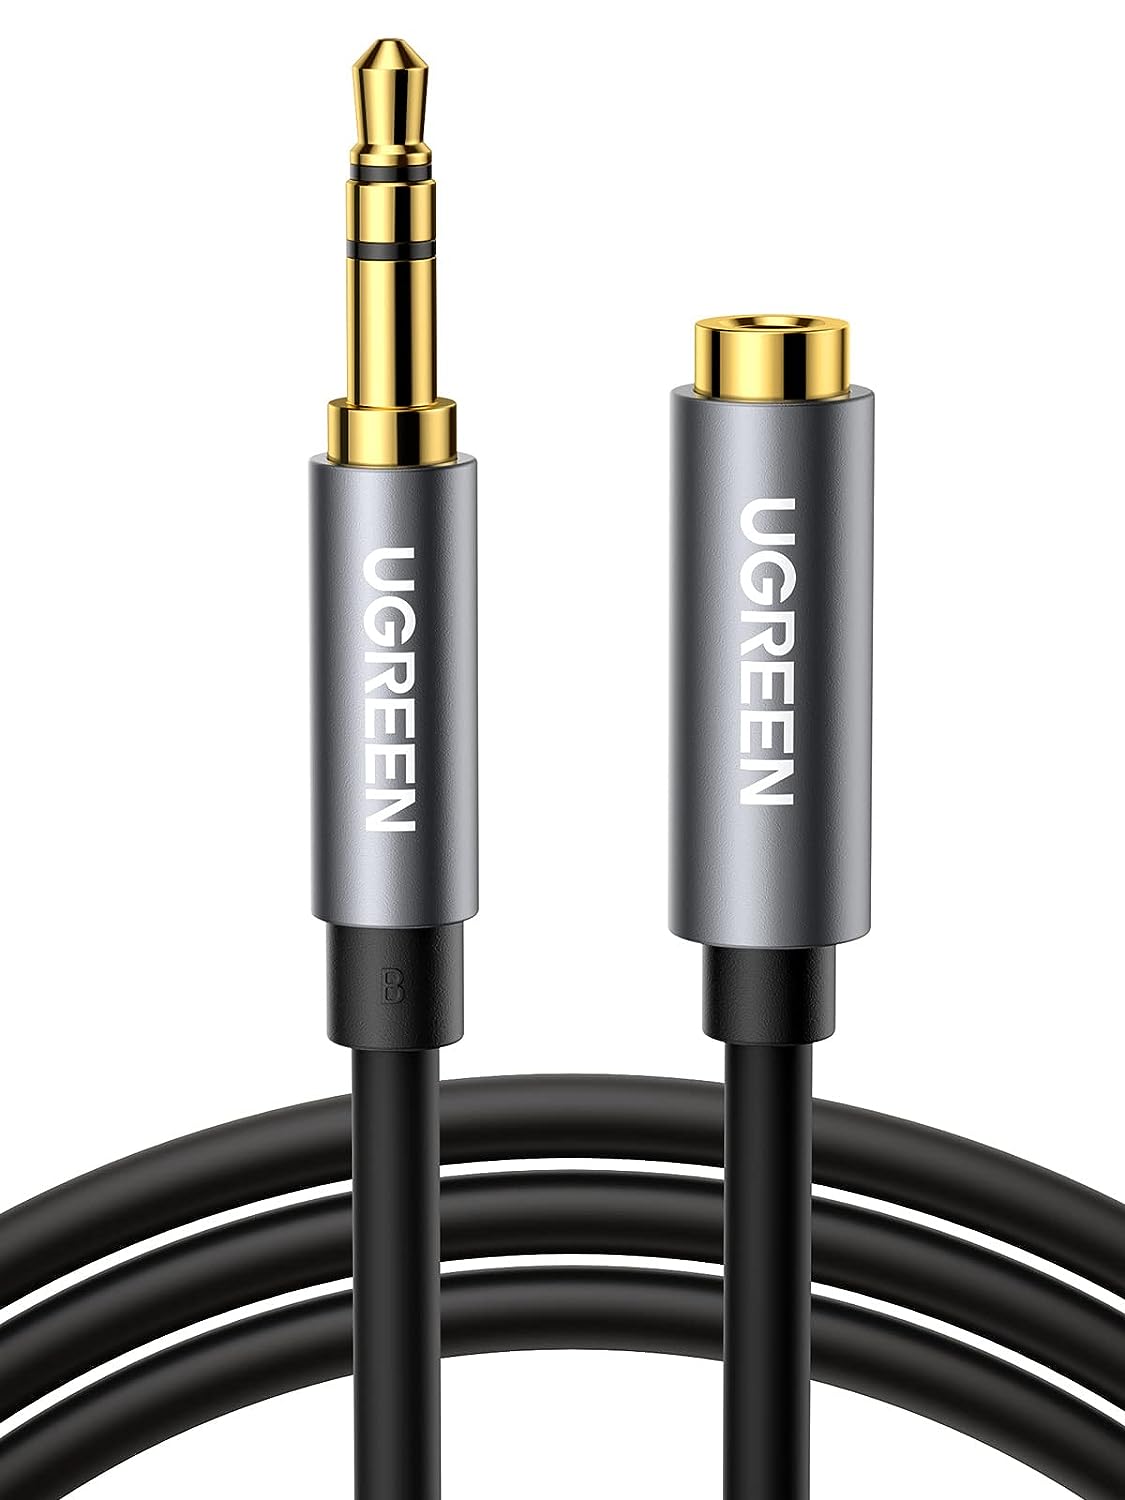 10595 Аудио кабель 3,5мм - 3,5мм UGREEN AV118, цвет - черный, длина 3м.